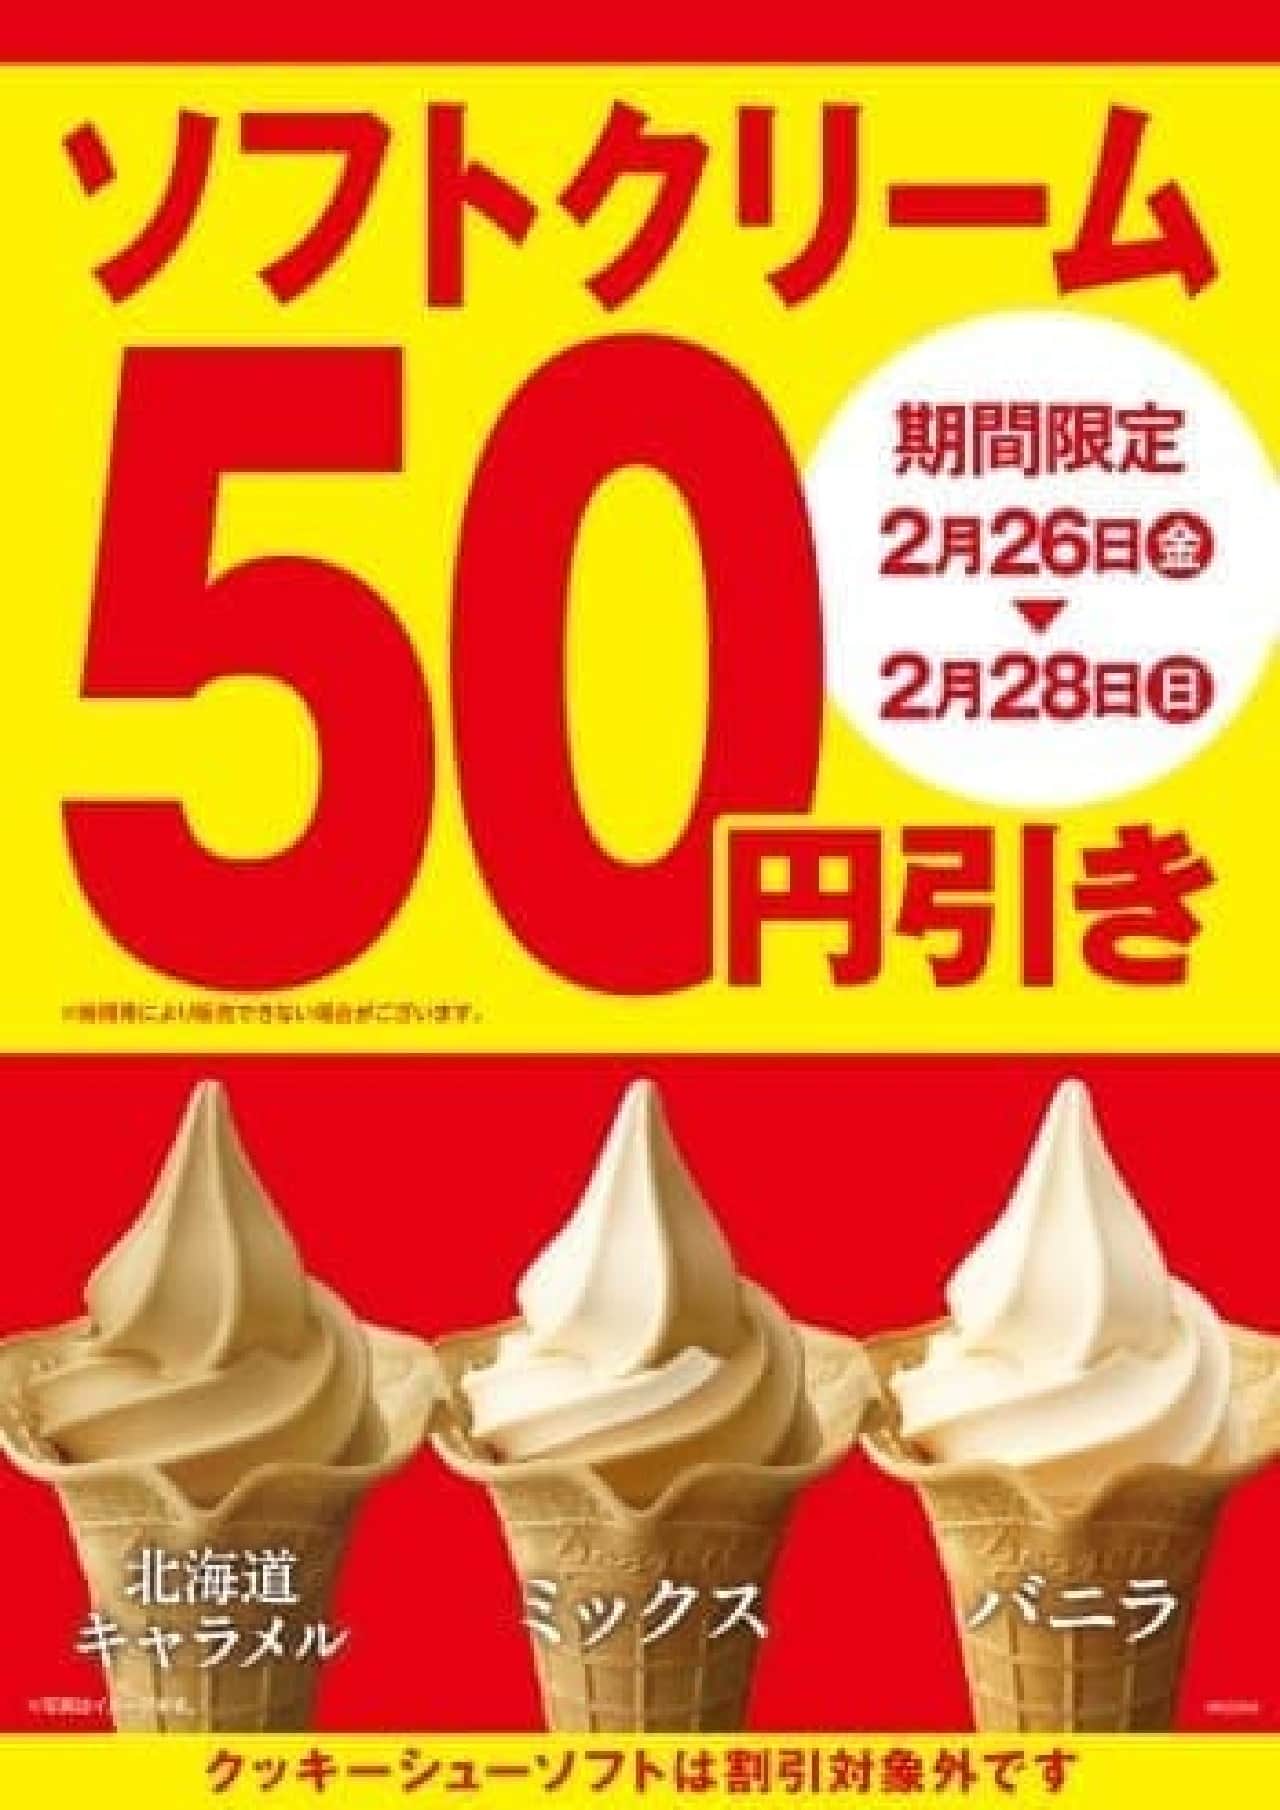 ミニストップでソフトクリーム全品50円引き 新作 北海道キャラメルソフト も対象 えん食べ